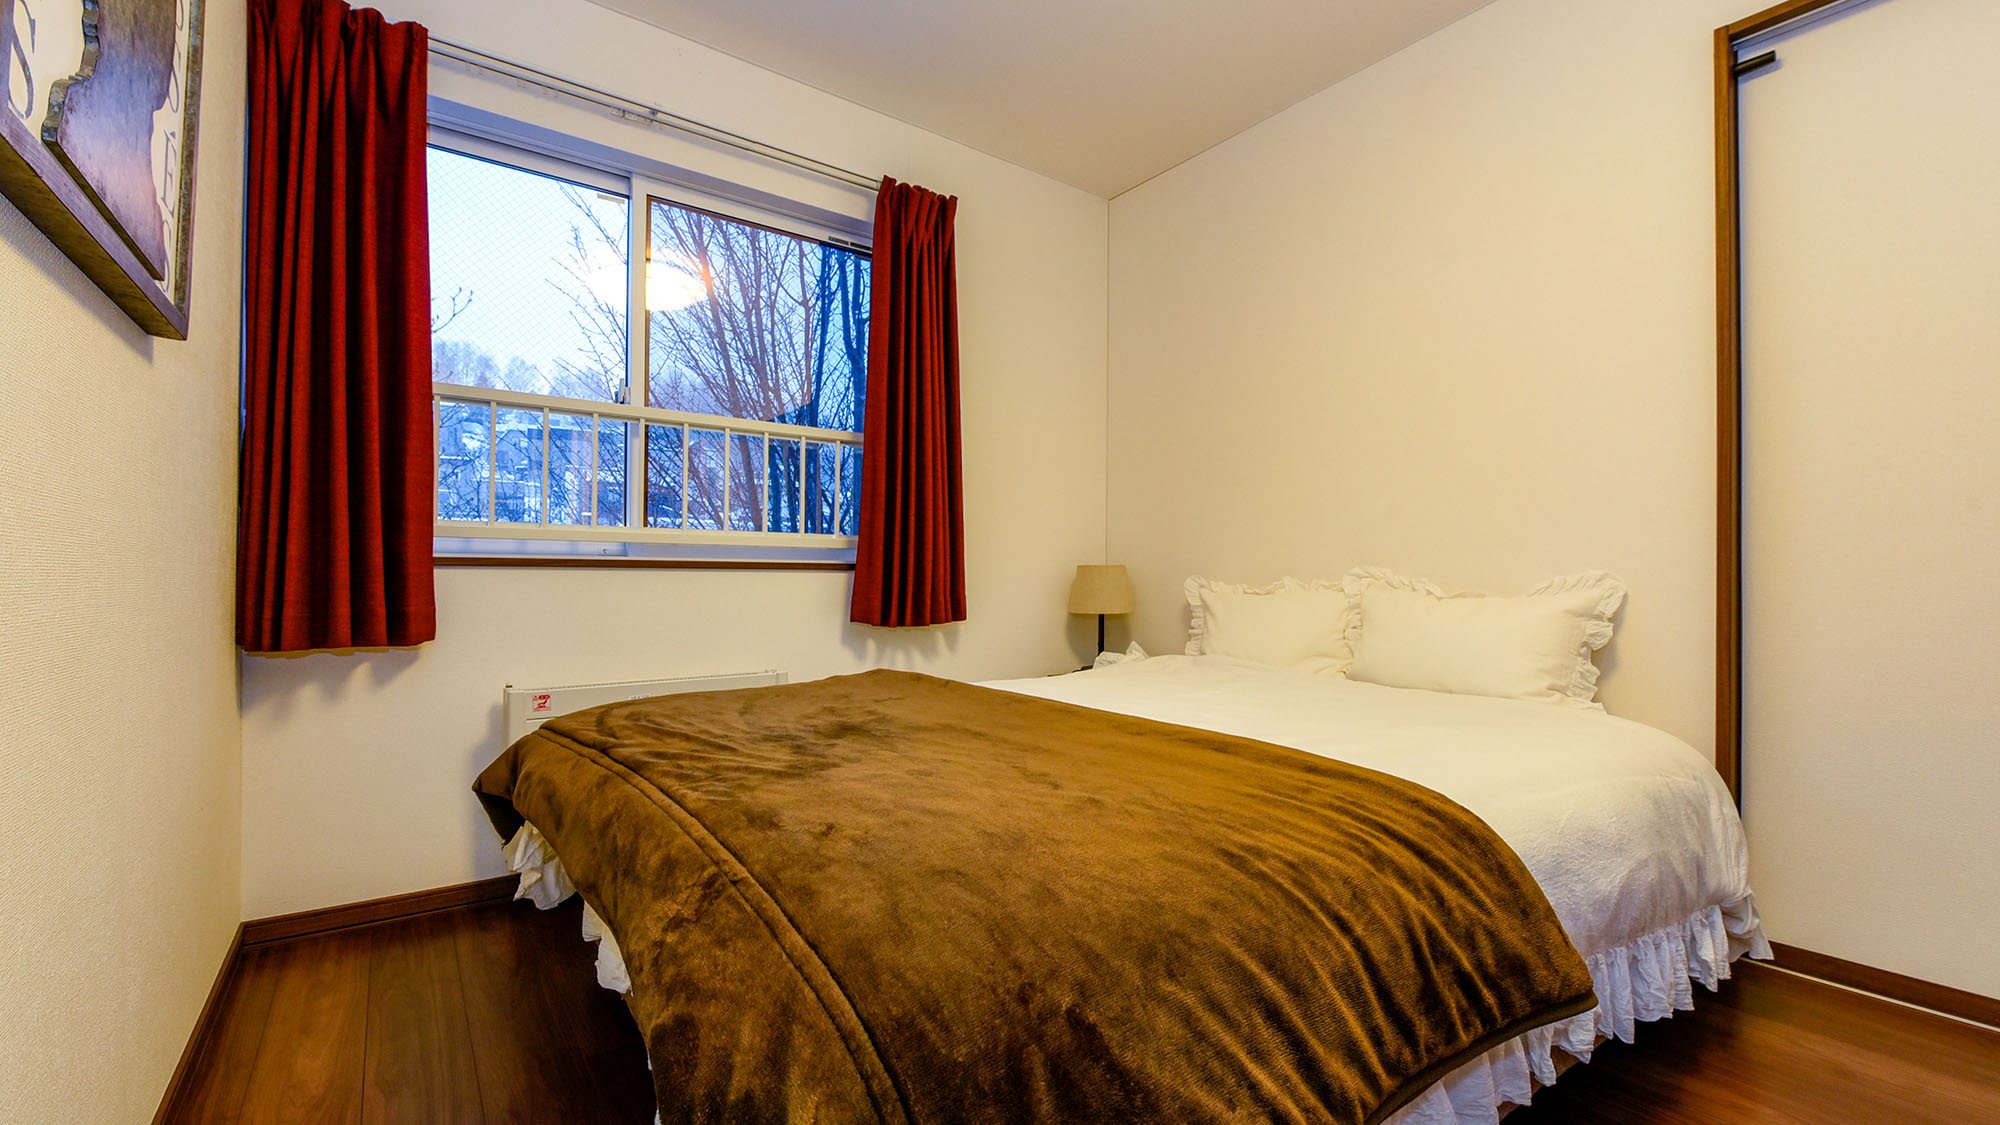 ・【2F寝室】ダブルベッドが1台のお部屋。ベッドは「フランスベッド」を使用